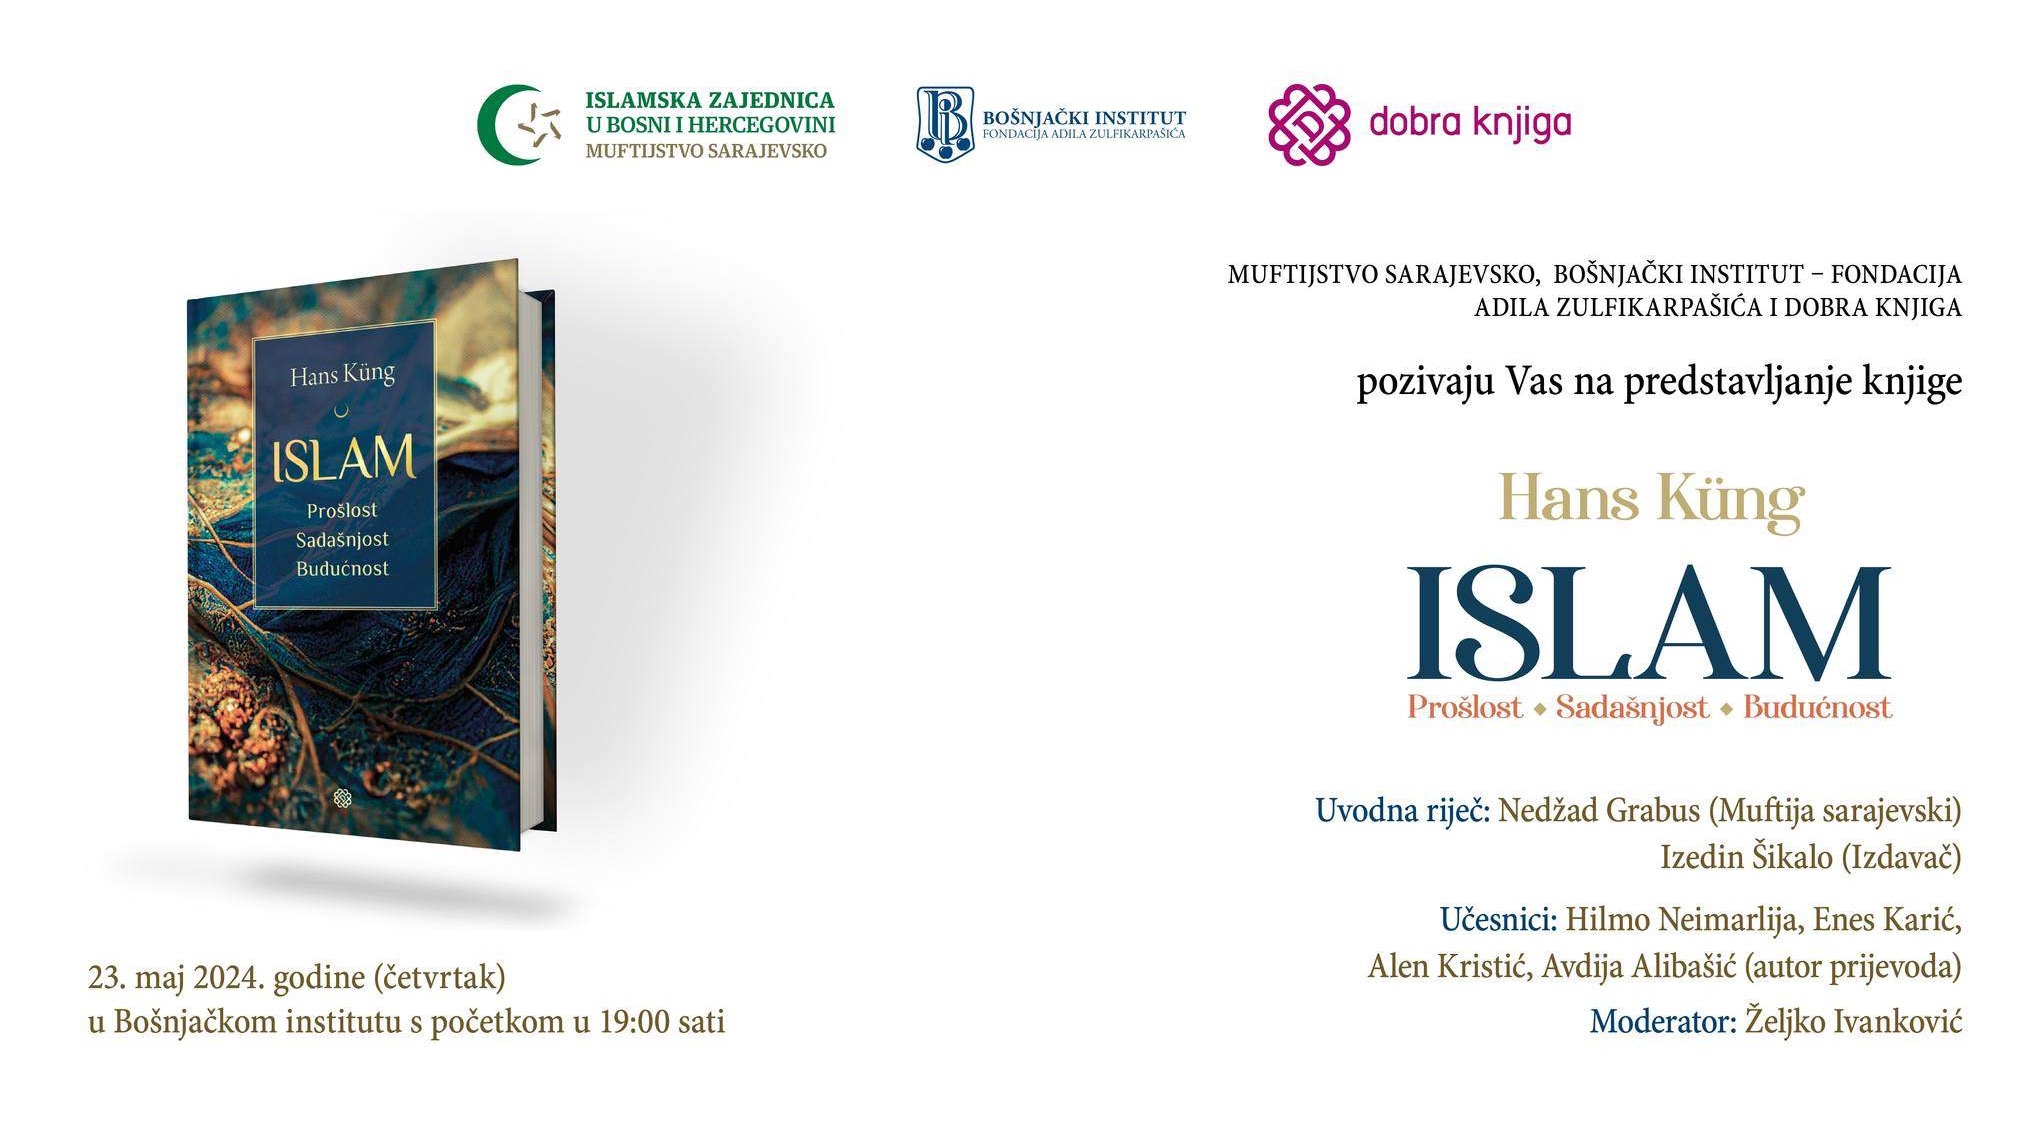 Sutra promocija knjige "Islam: prošlost, sadašnjost, budućnost" 